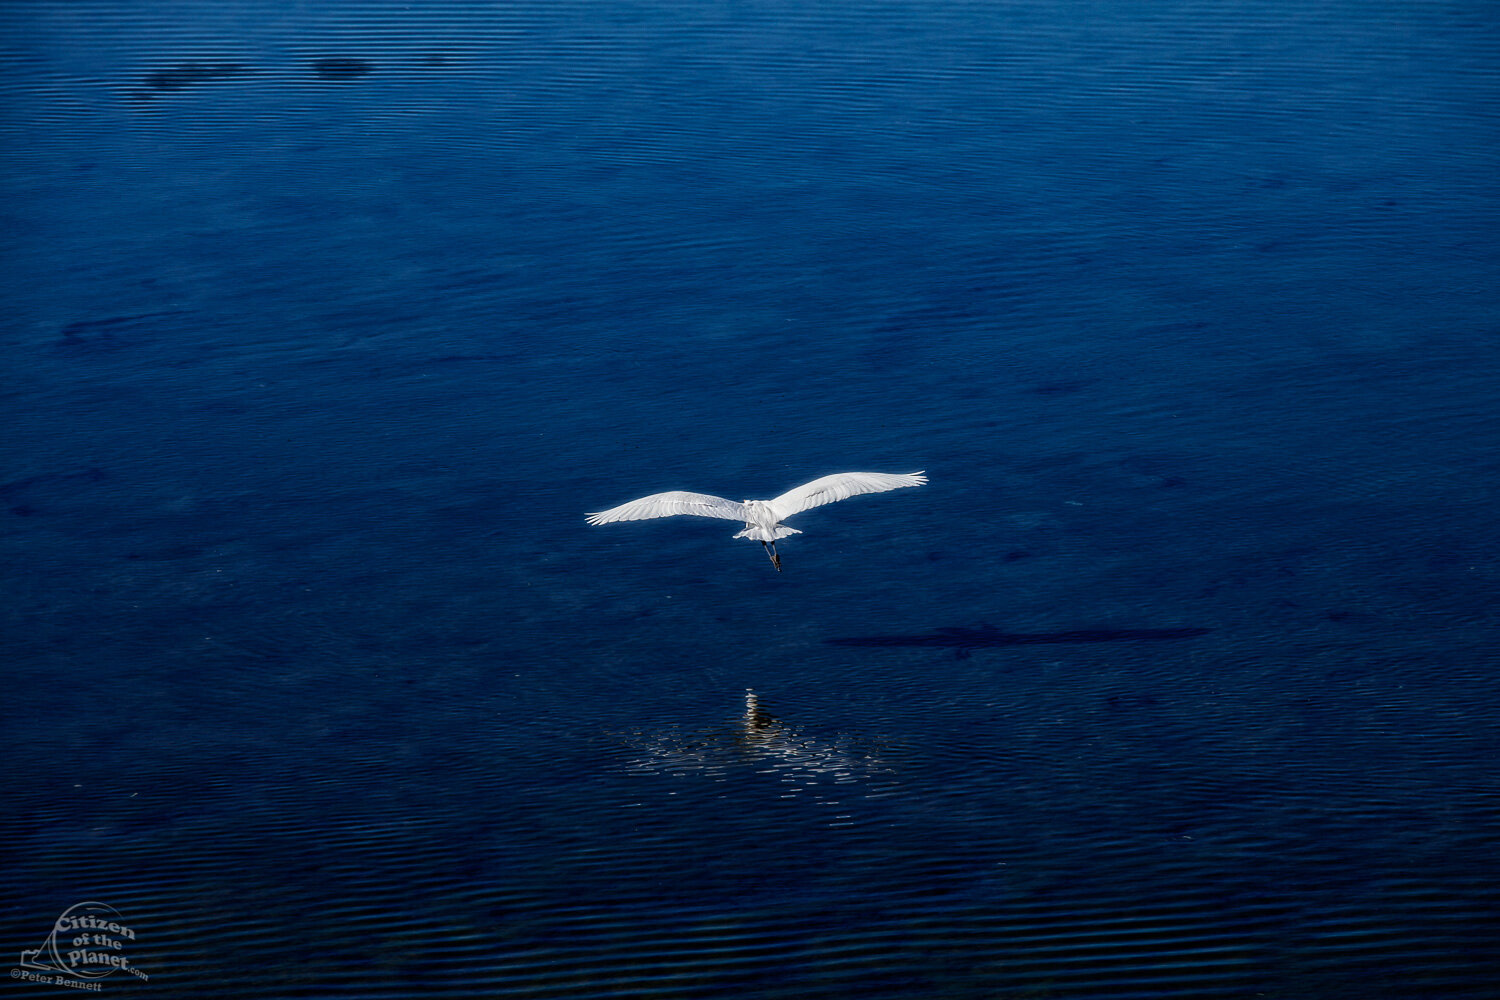  Bolsa Chica Great Egret in Flight 